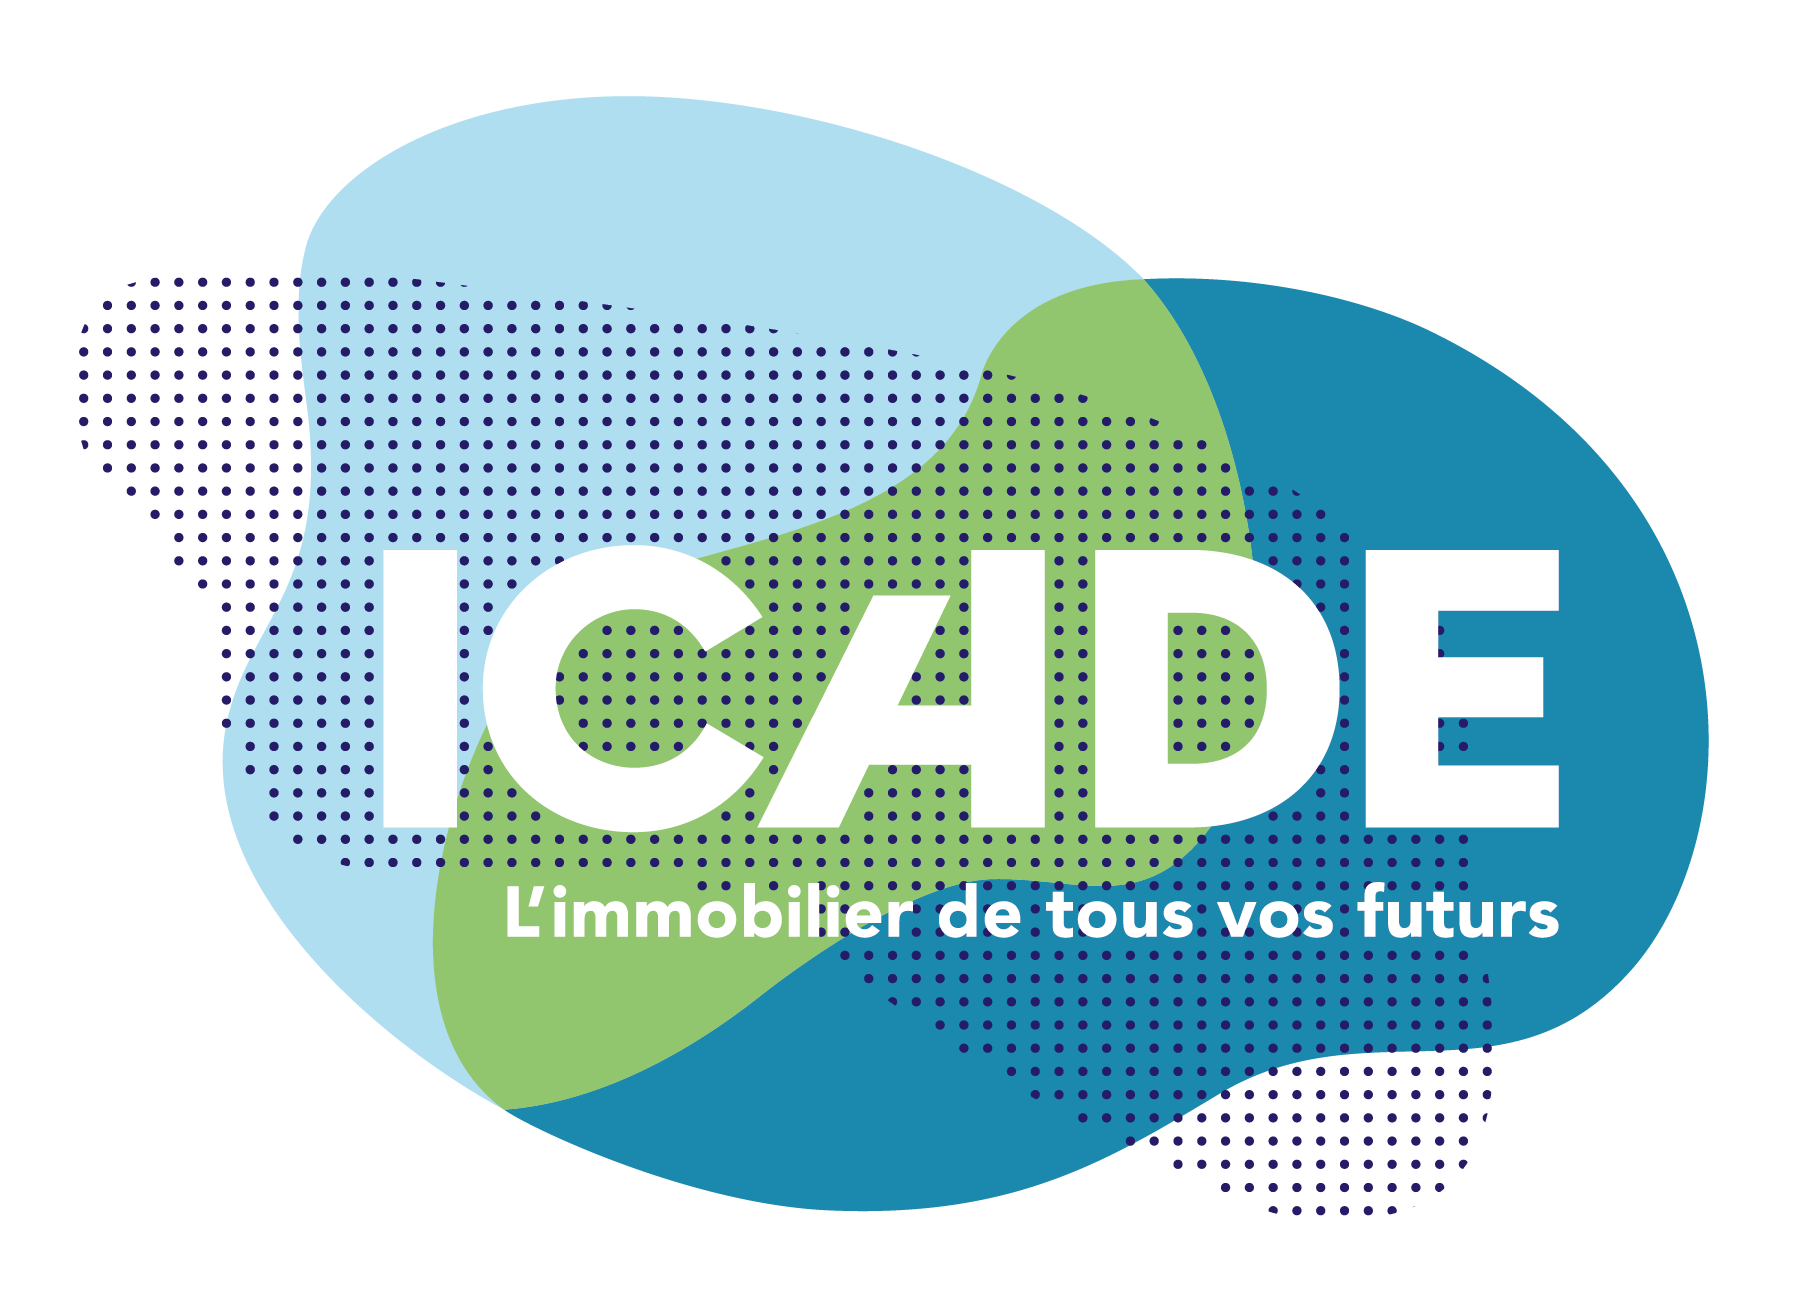 logo Icade